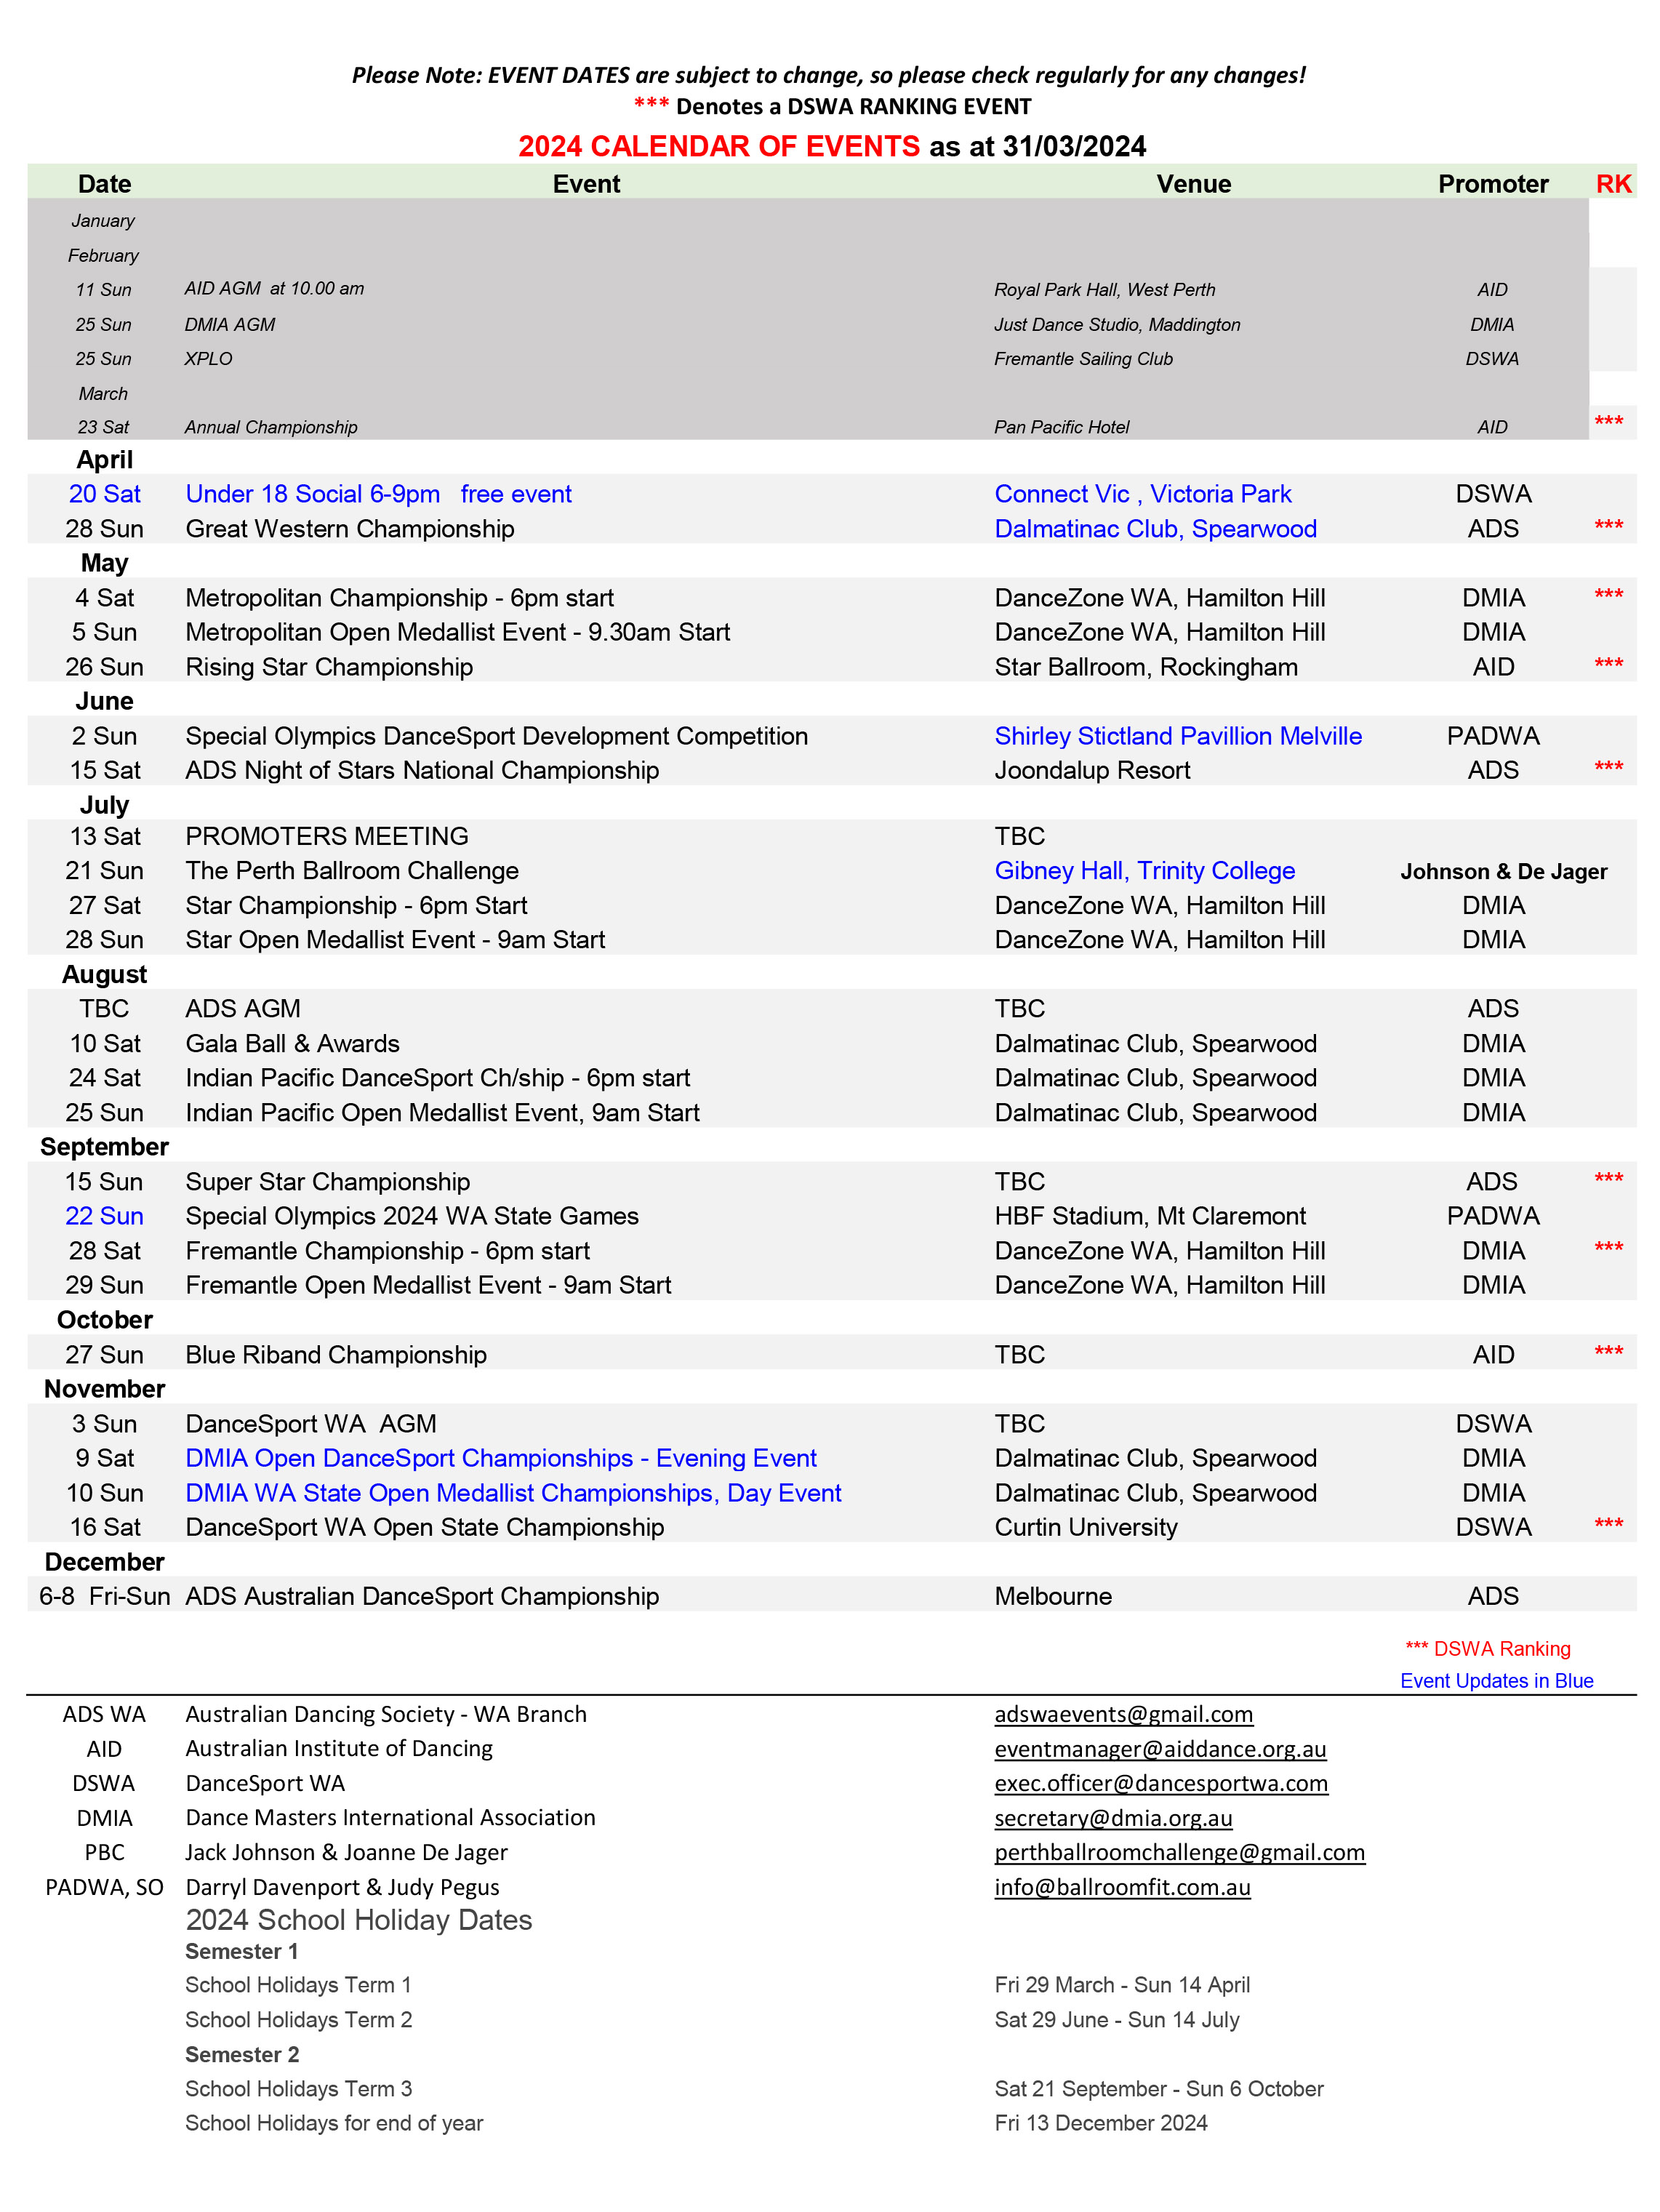 Copy of dancesport combined calendar of events 2024 ver2.5 31.03.2024